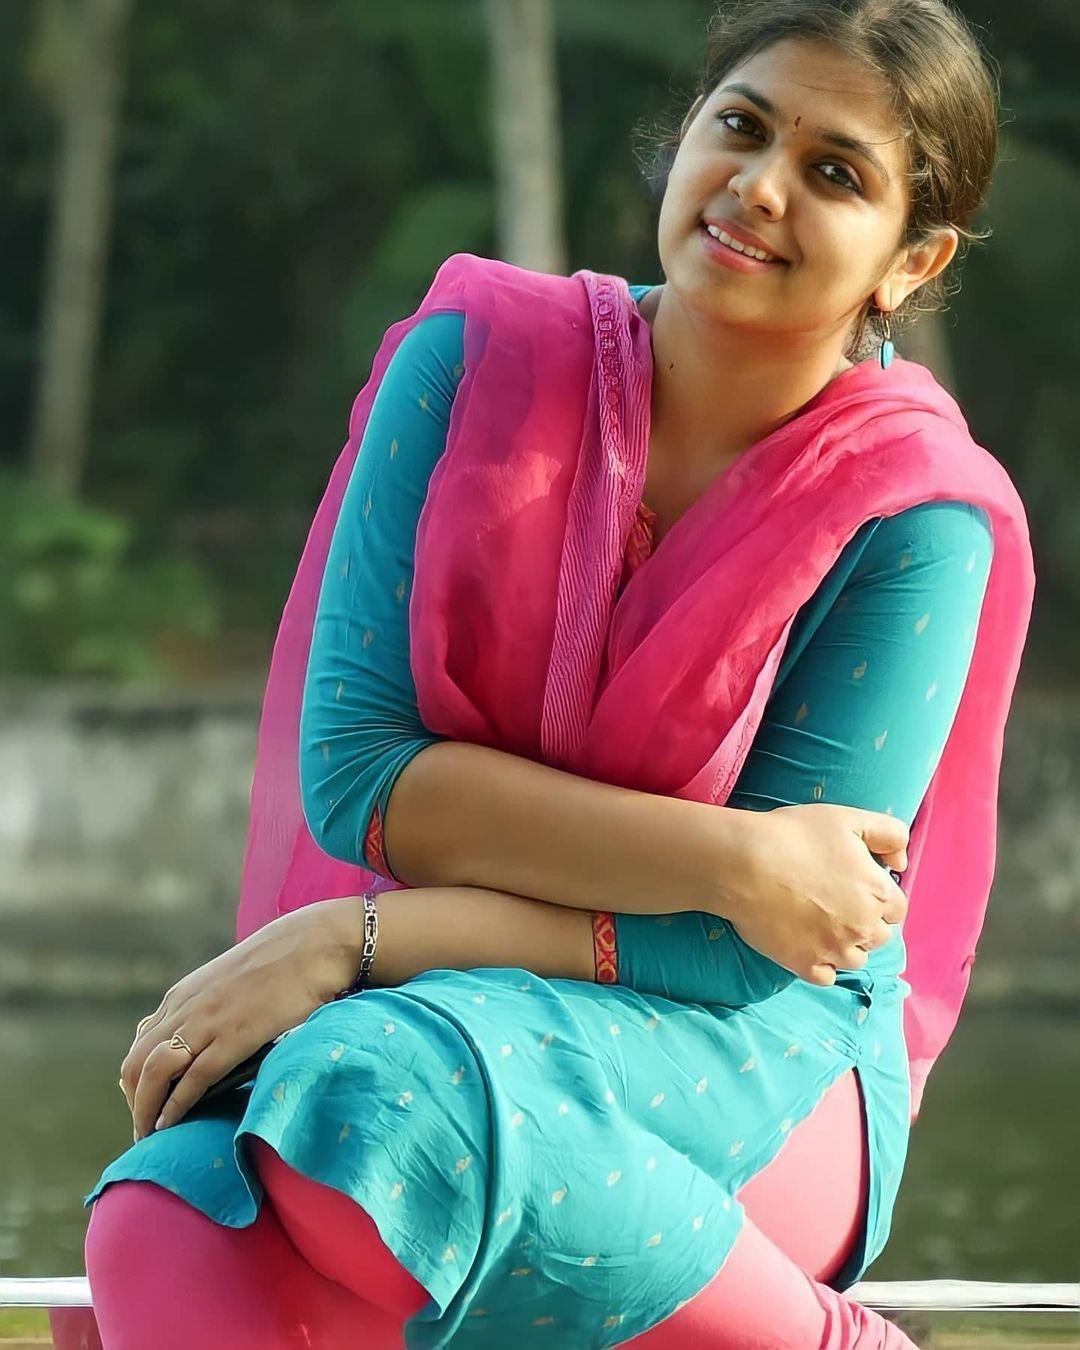 malayalam actress hot photos hd